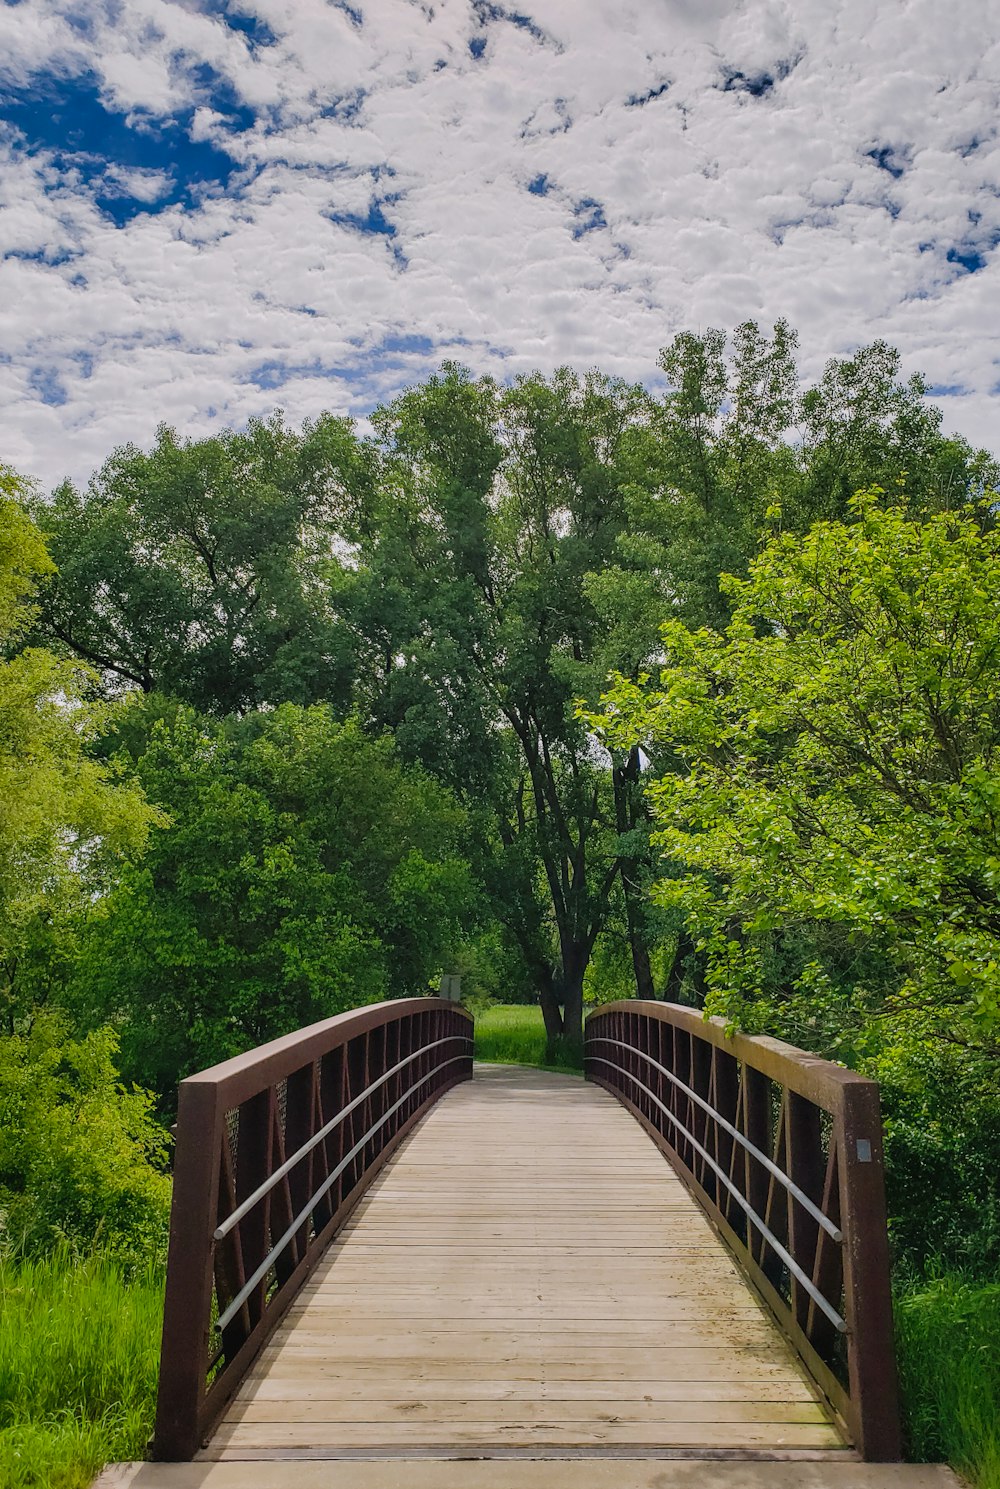 ponte de madeira marrom sobre árvores verdes sob o céu azul e nuvens brancas durante o dia